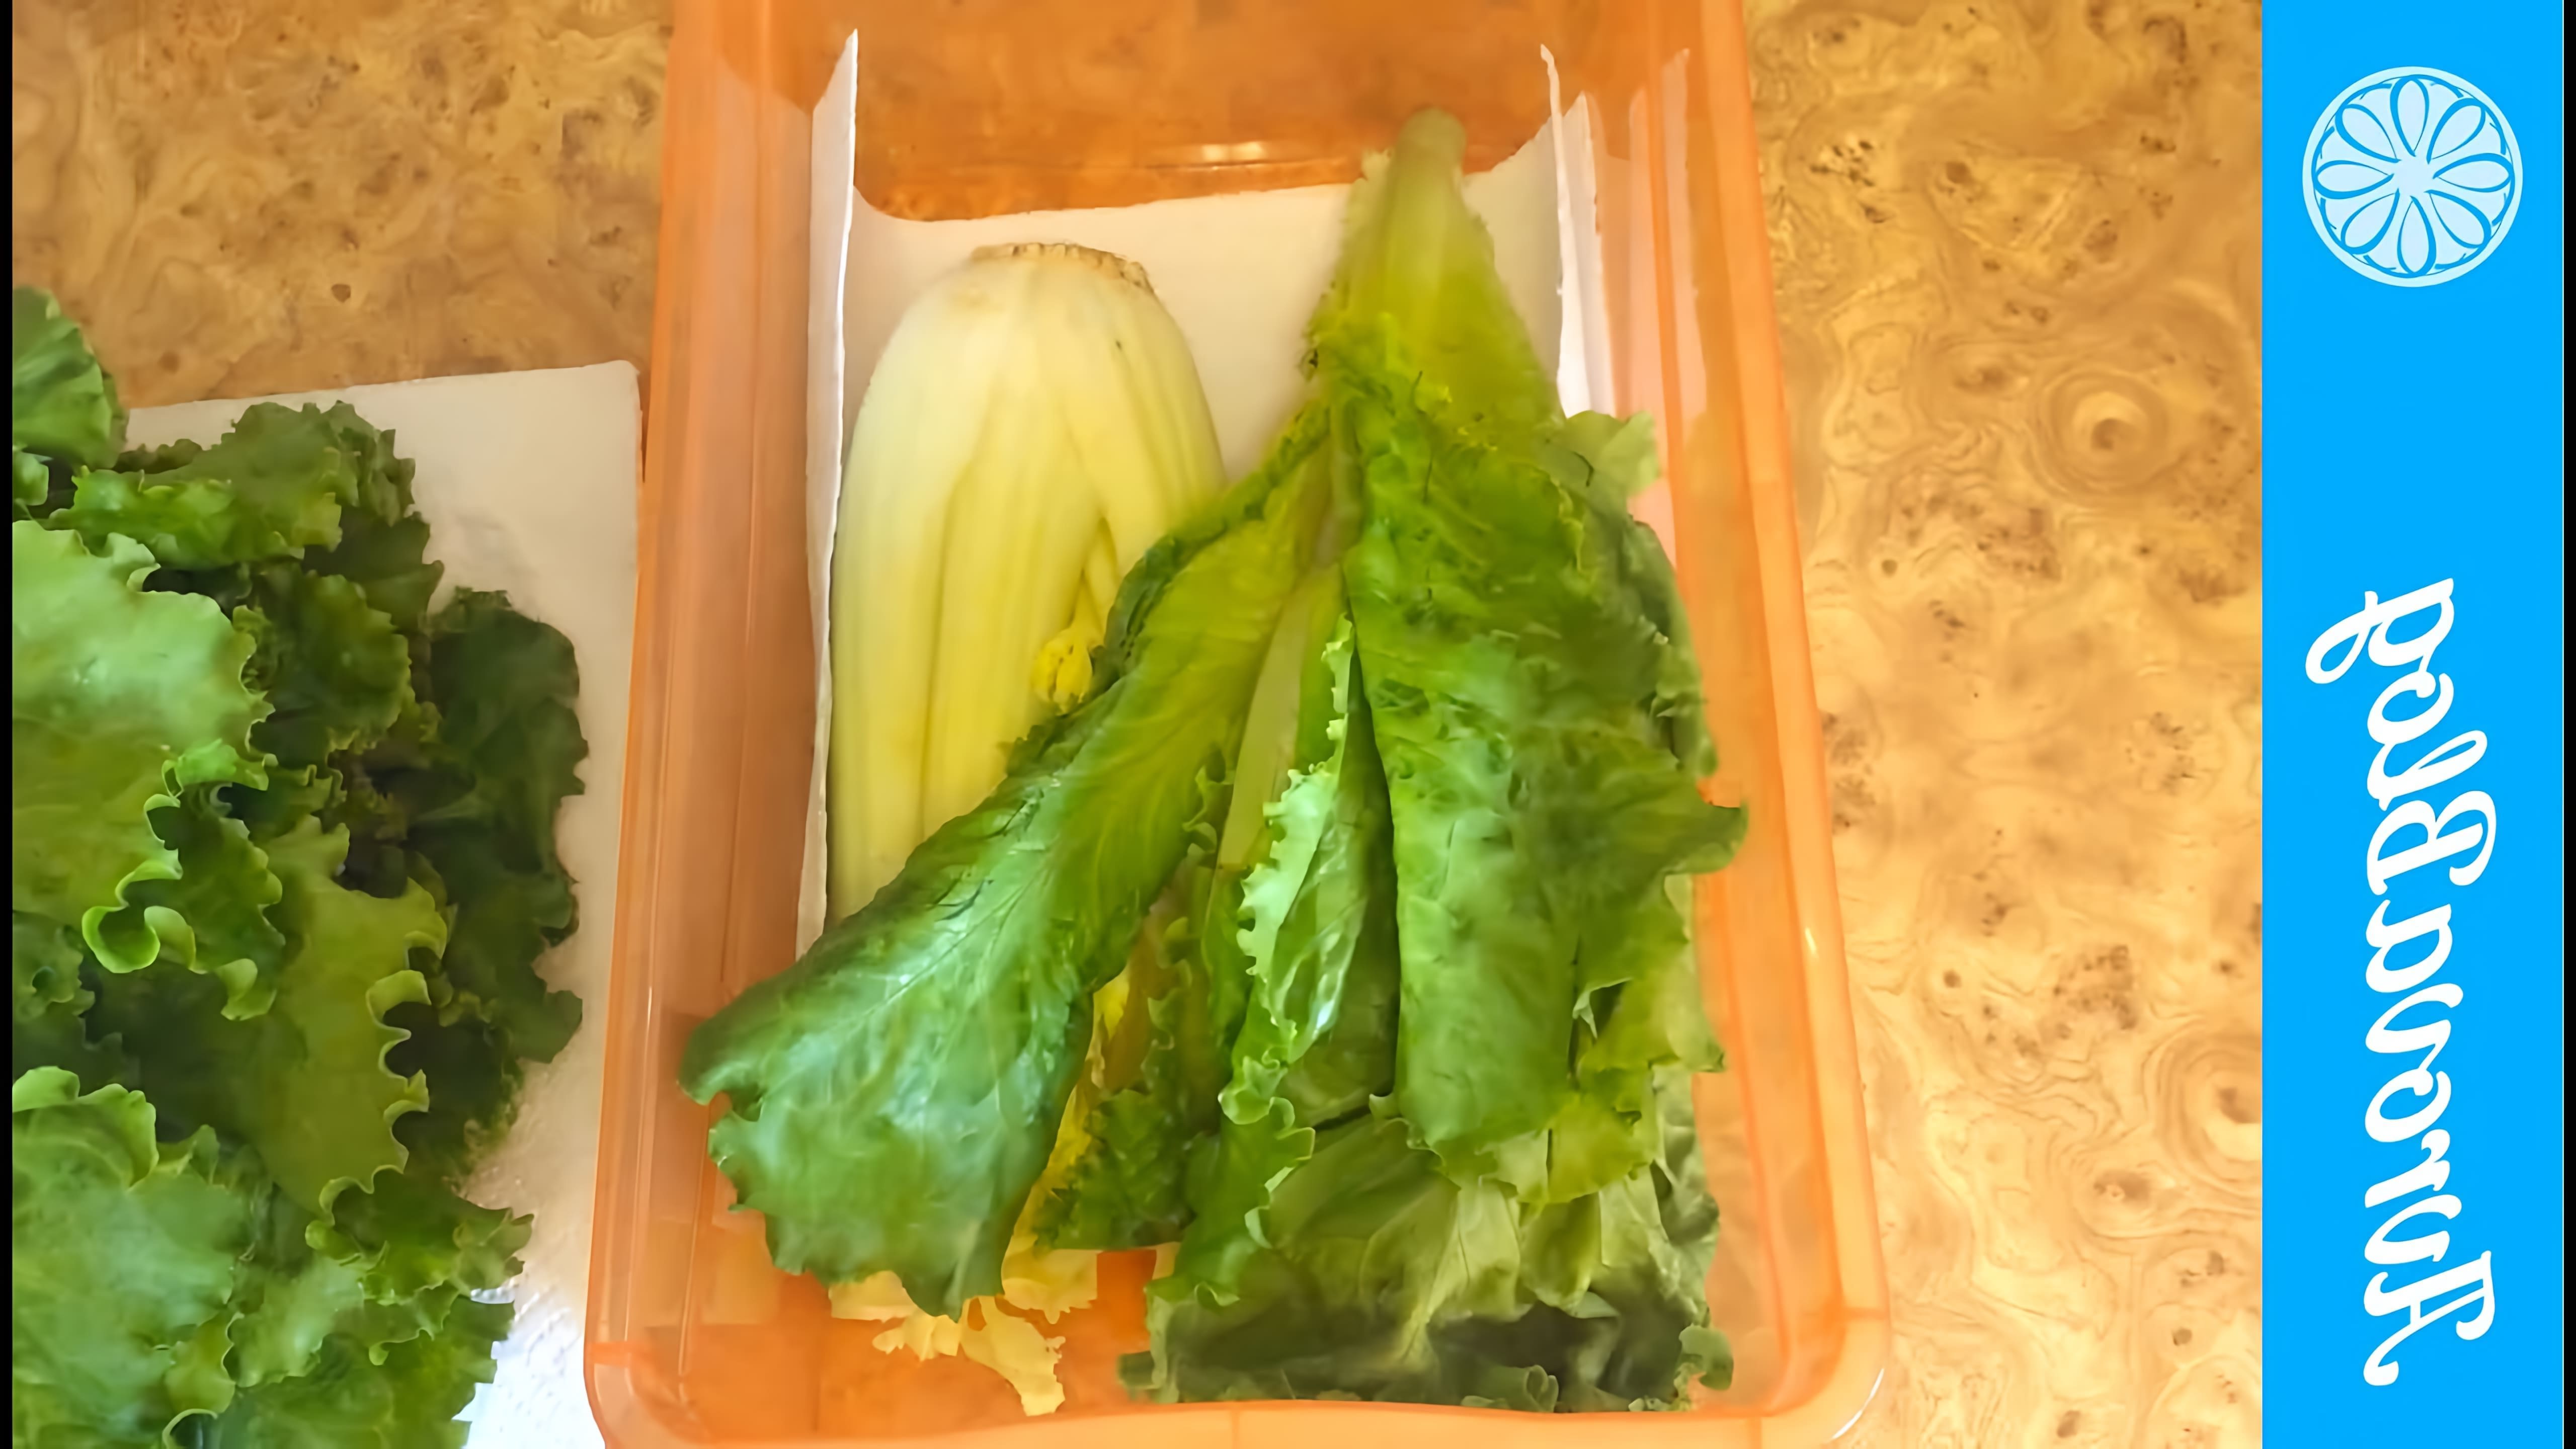 В этом видео демонстрируется, как хранить листья салата и стебли сельдерея в холодильнике